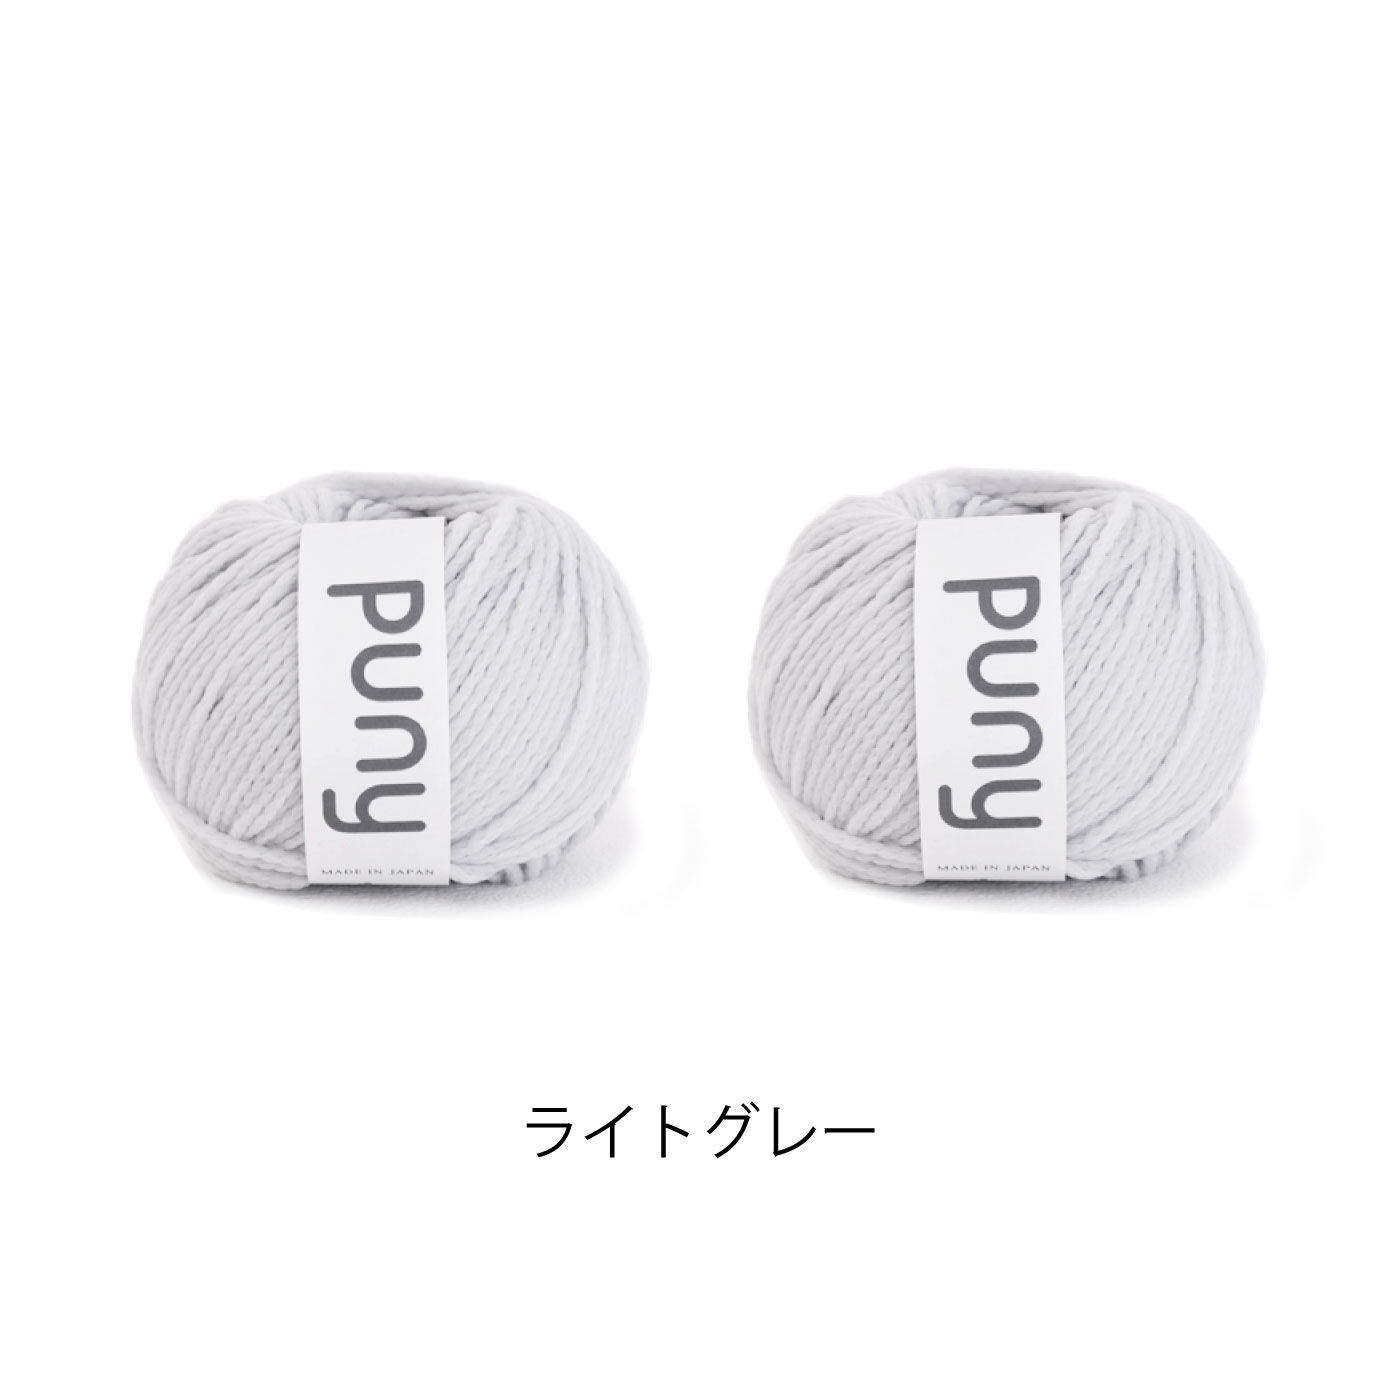 FELISSIMO PARTNERS|ふわ軽毛糸Pｕｎｙで編む　sawada itto：amuri　しずく型バスケットキット